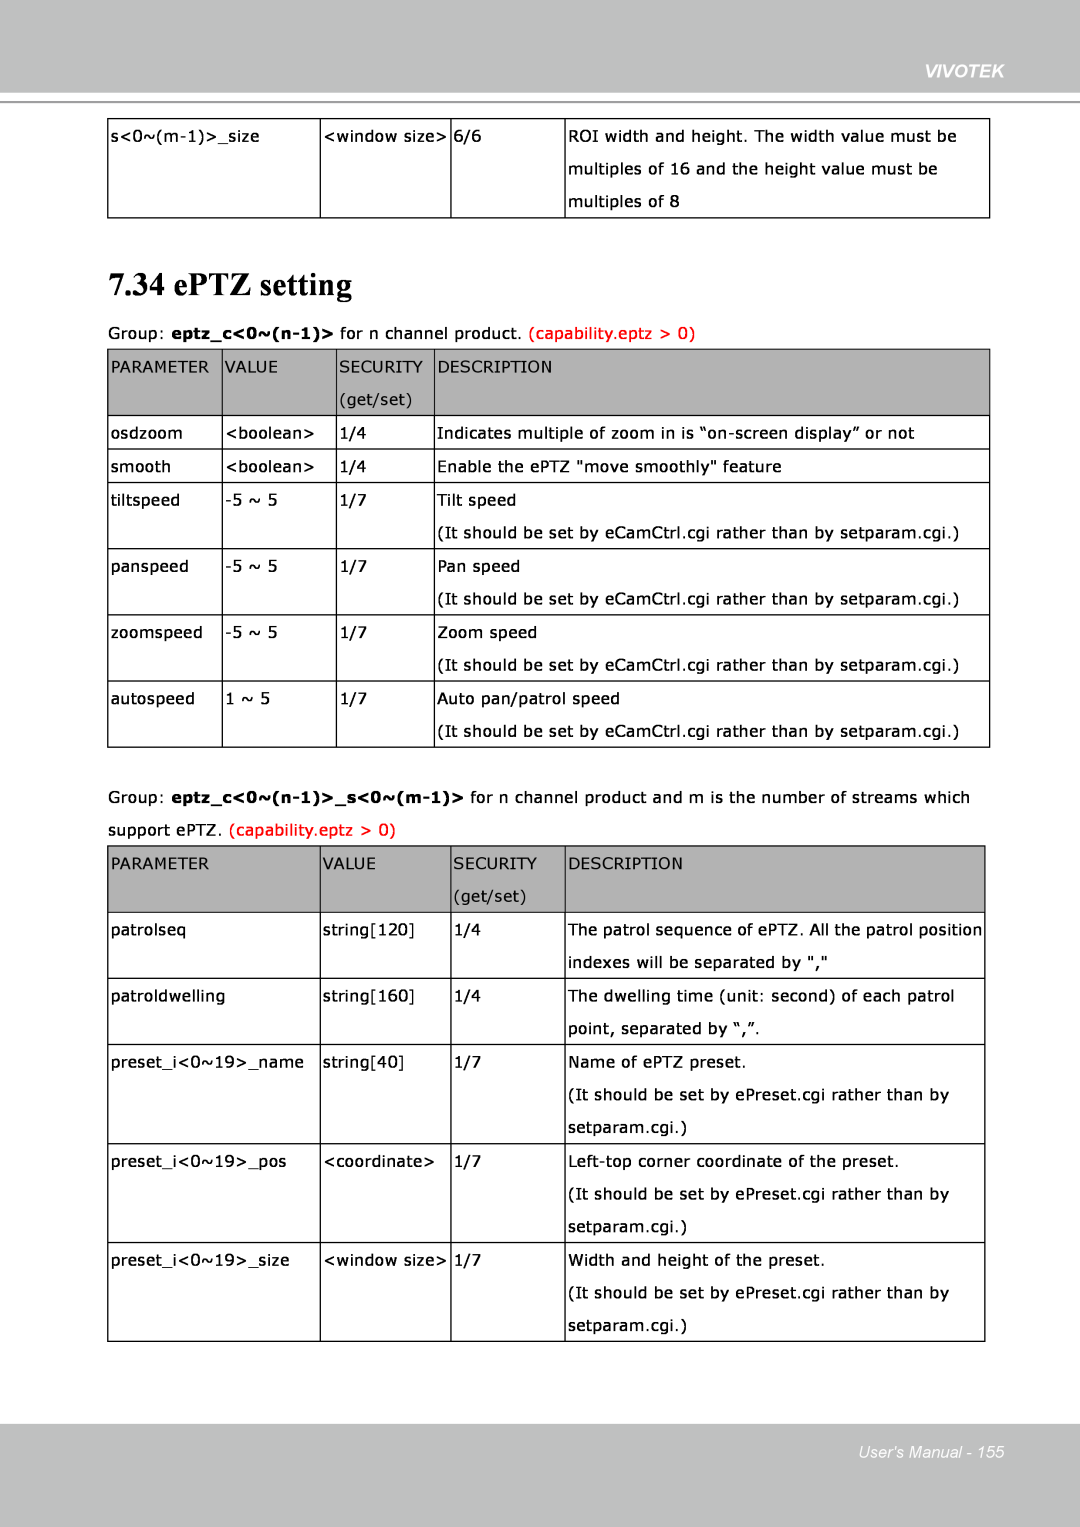 Vivotek IP8151 manual ePTZ setting, Vivotek, Users Manual 